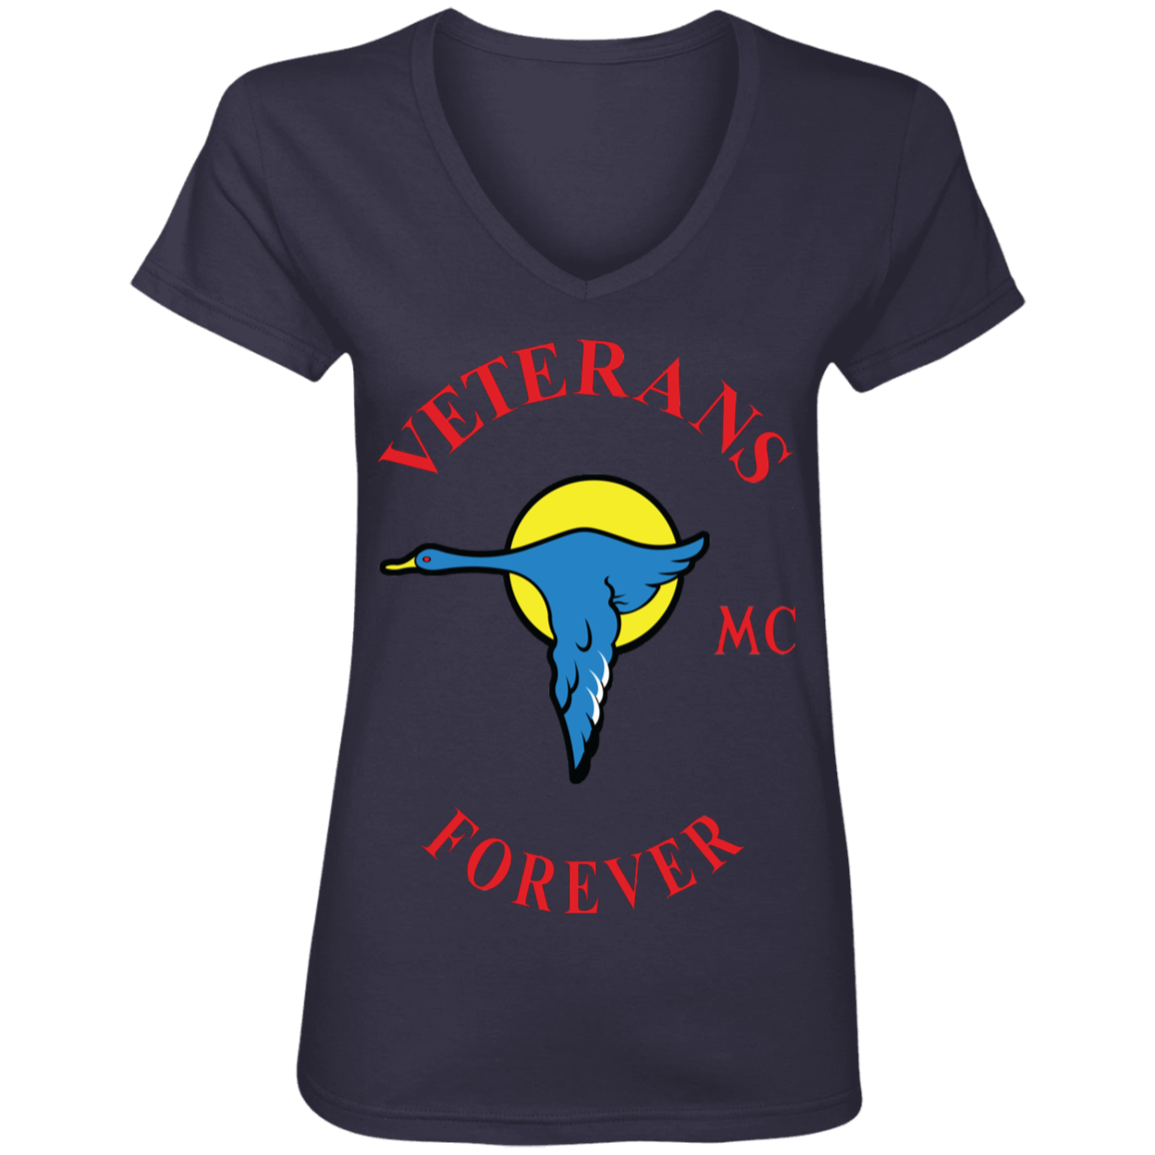 Veterans Forever goose logo with black 4500x5400 88VL Ladies' V-Neck T-Shirt